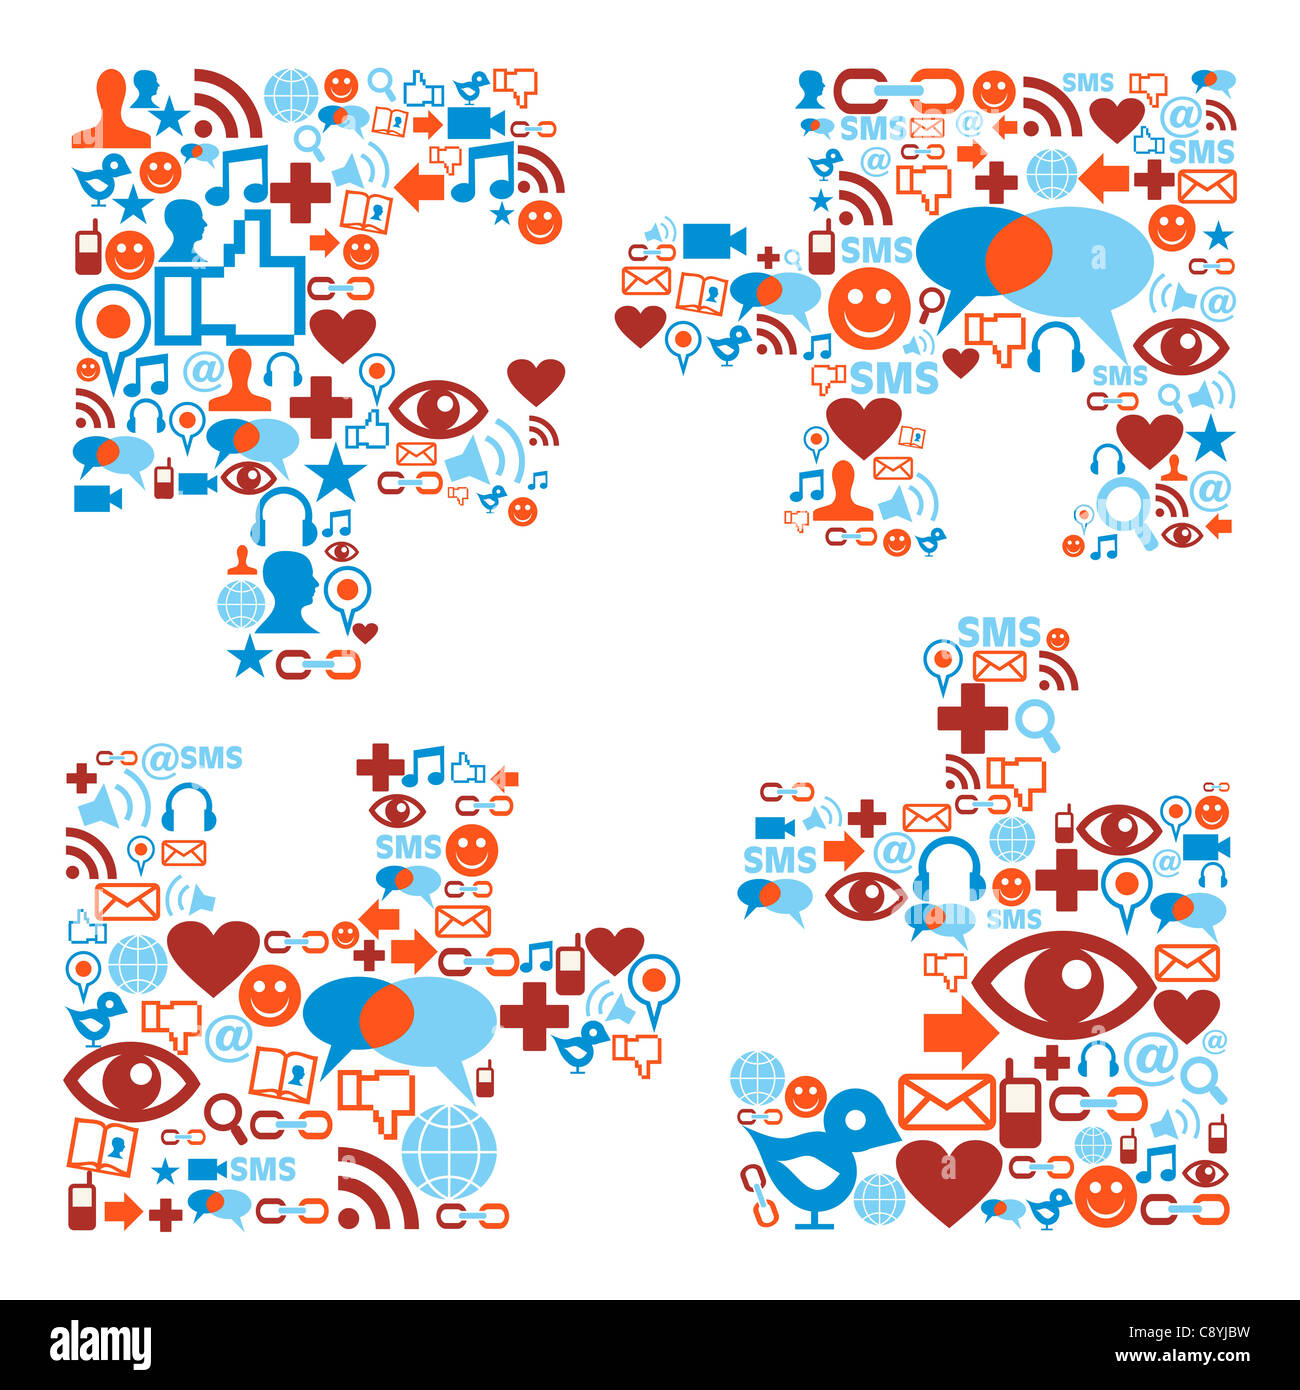 Social media icons set dans la composition forme puzzle Banque D'Images